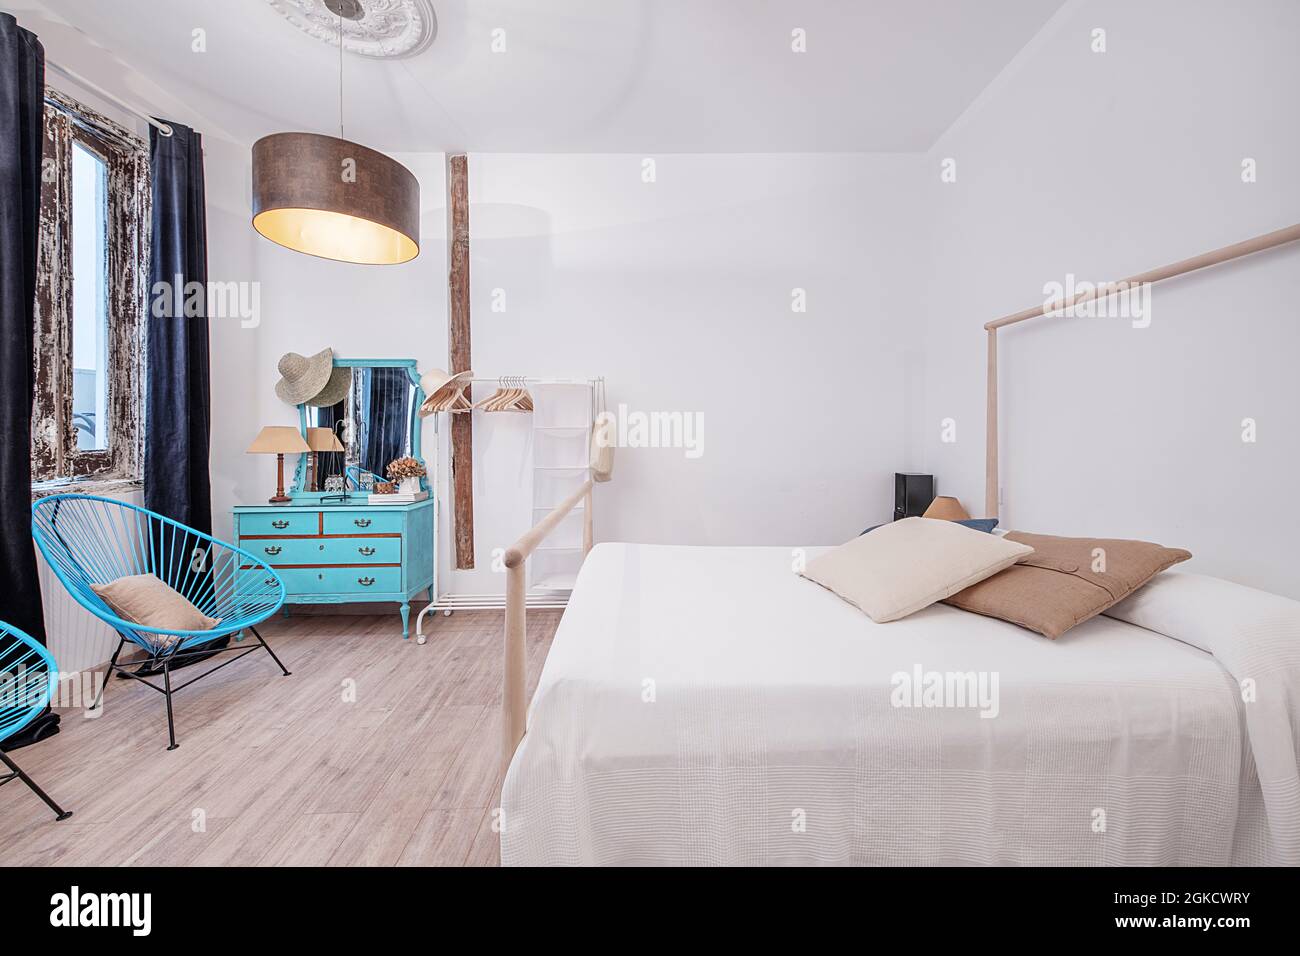 Dormitorio en apartamento vacacional con tocador azul y butacas azules. Decoracion chic para viajeras. Stock Photo